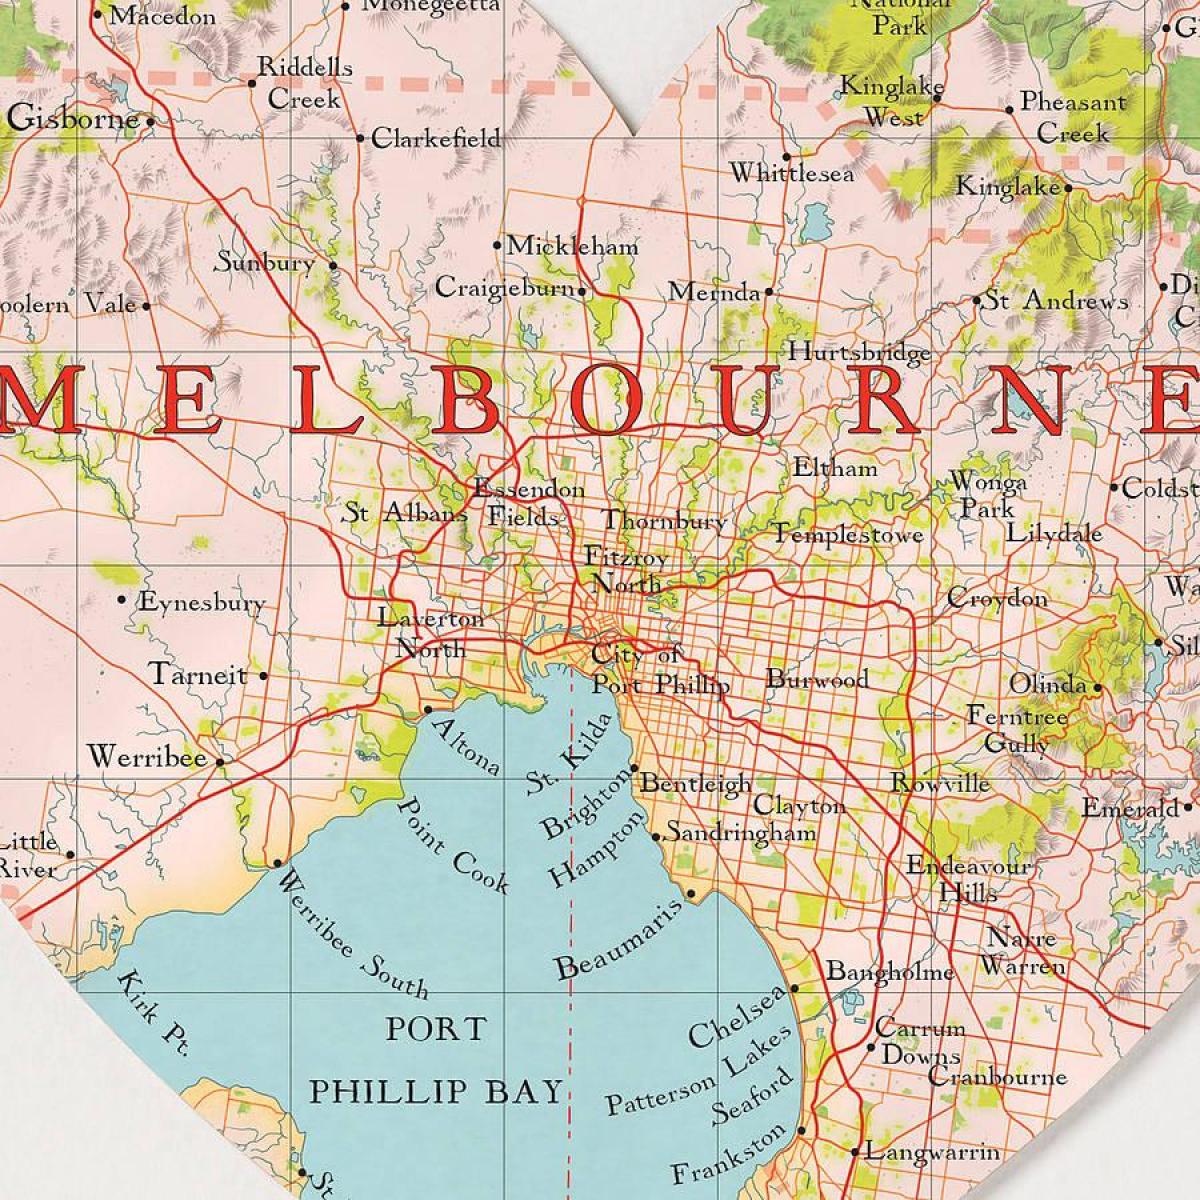 Melburn hartë të botës